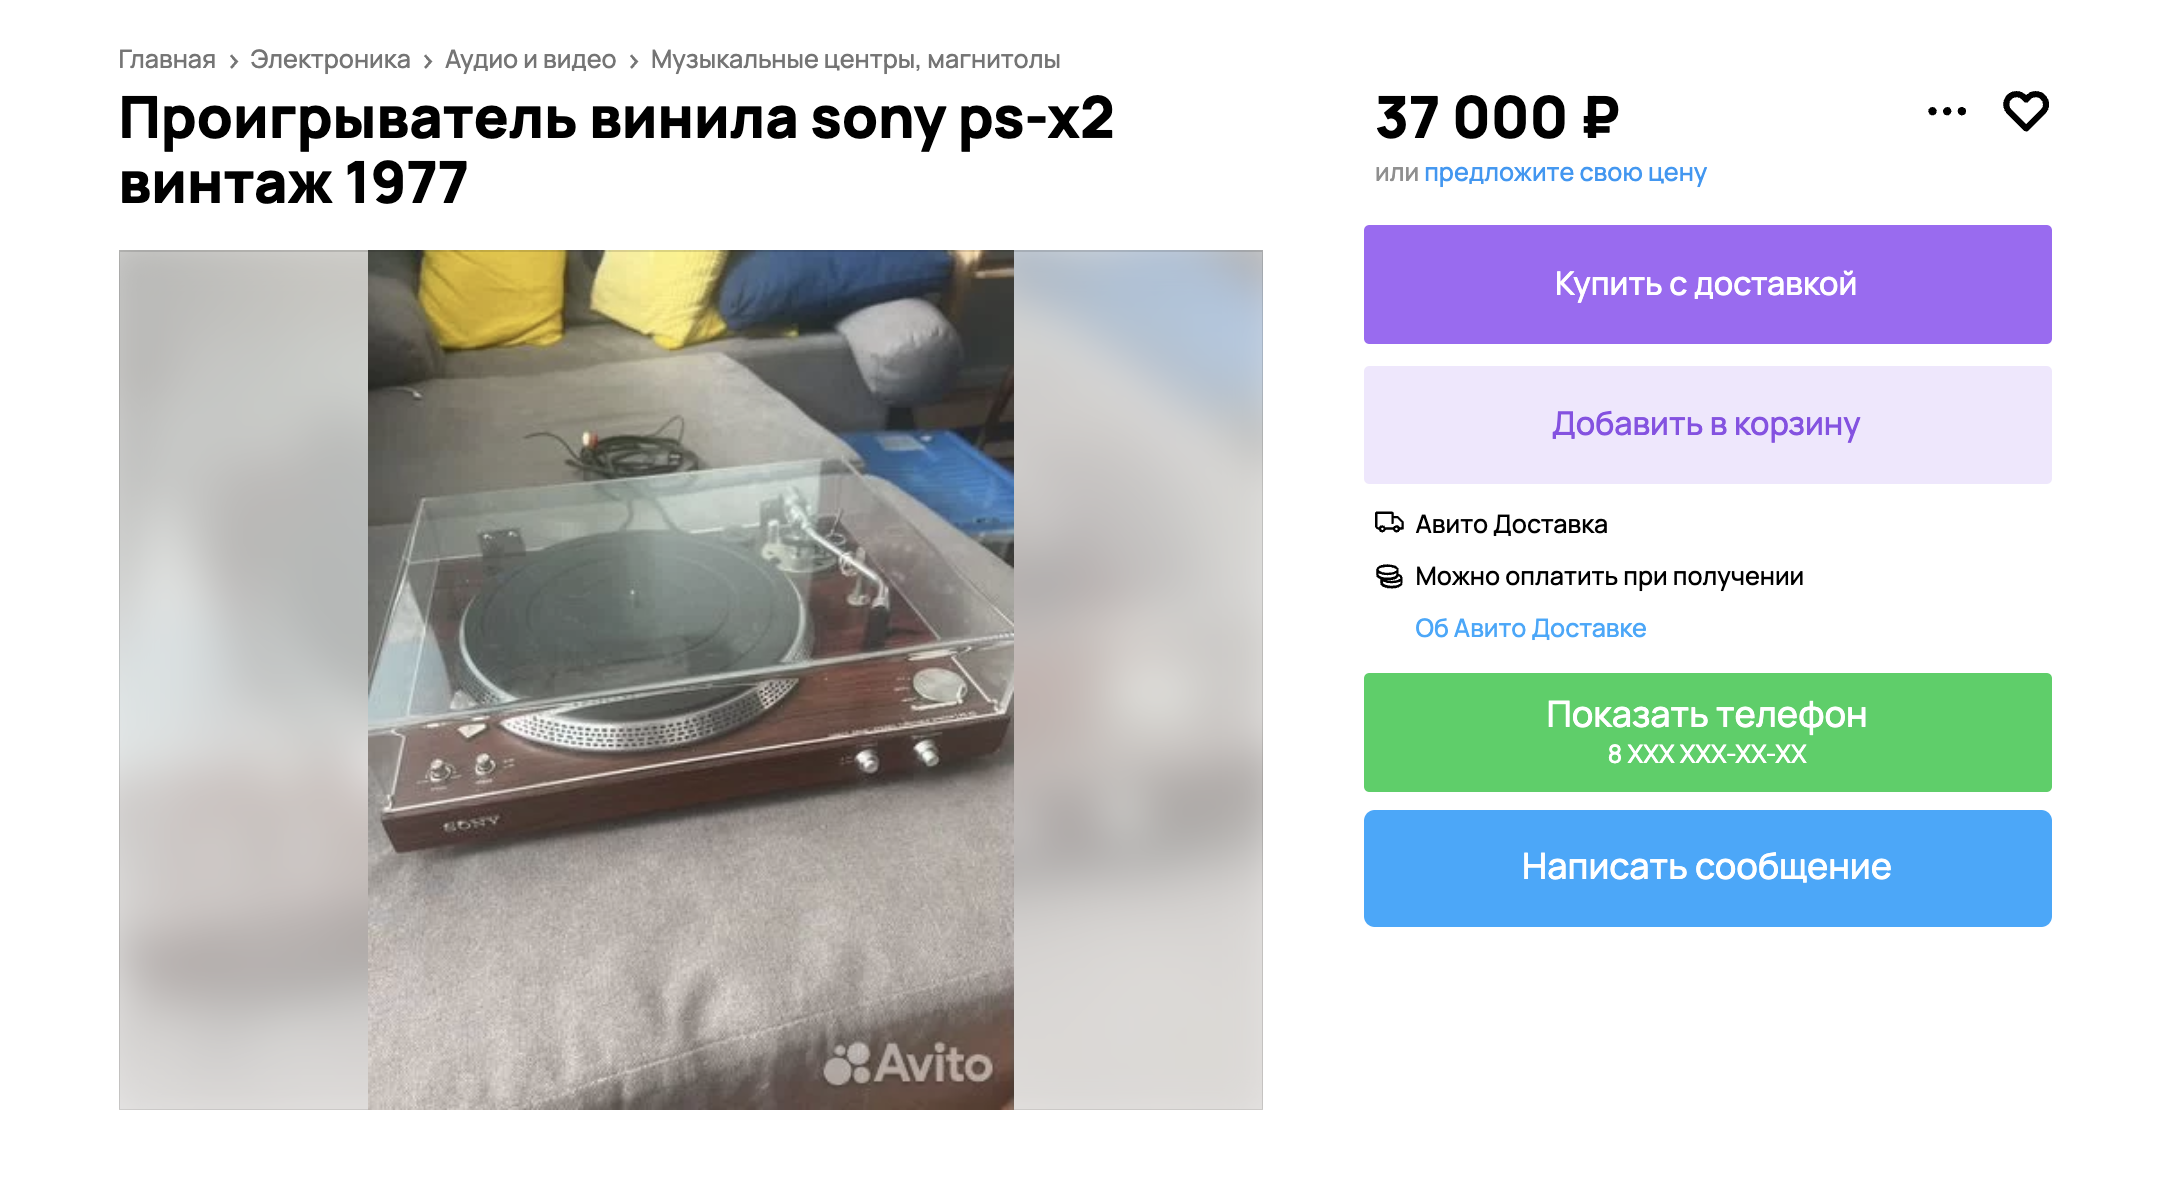 Винтажный Sony и в 1977 году стоил немало, и сейчас недешево. Источник: avito.ru